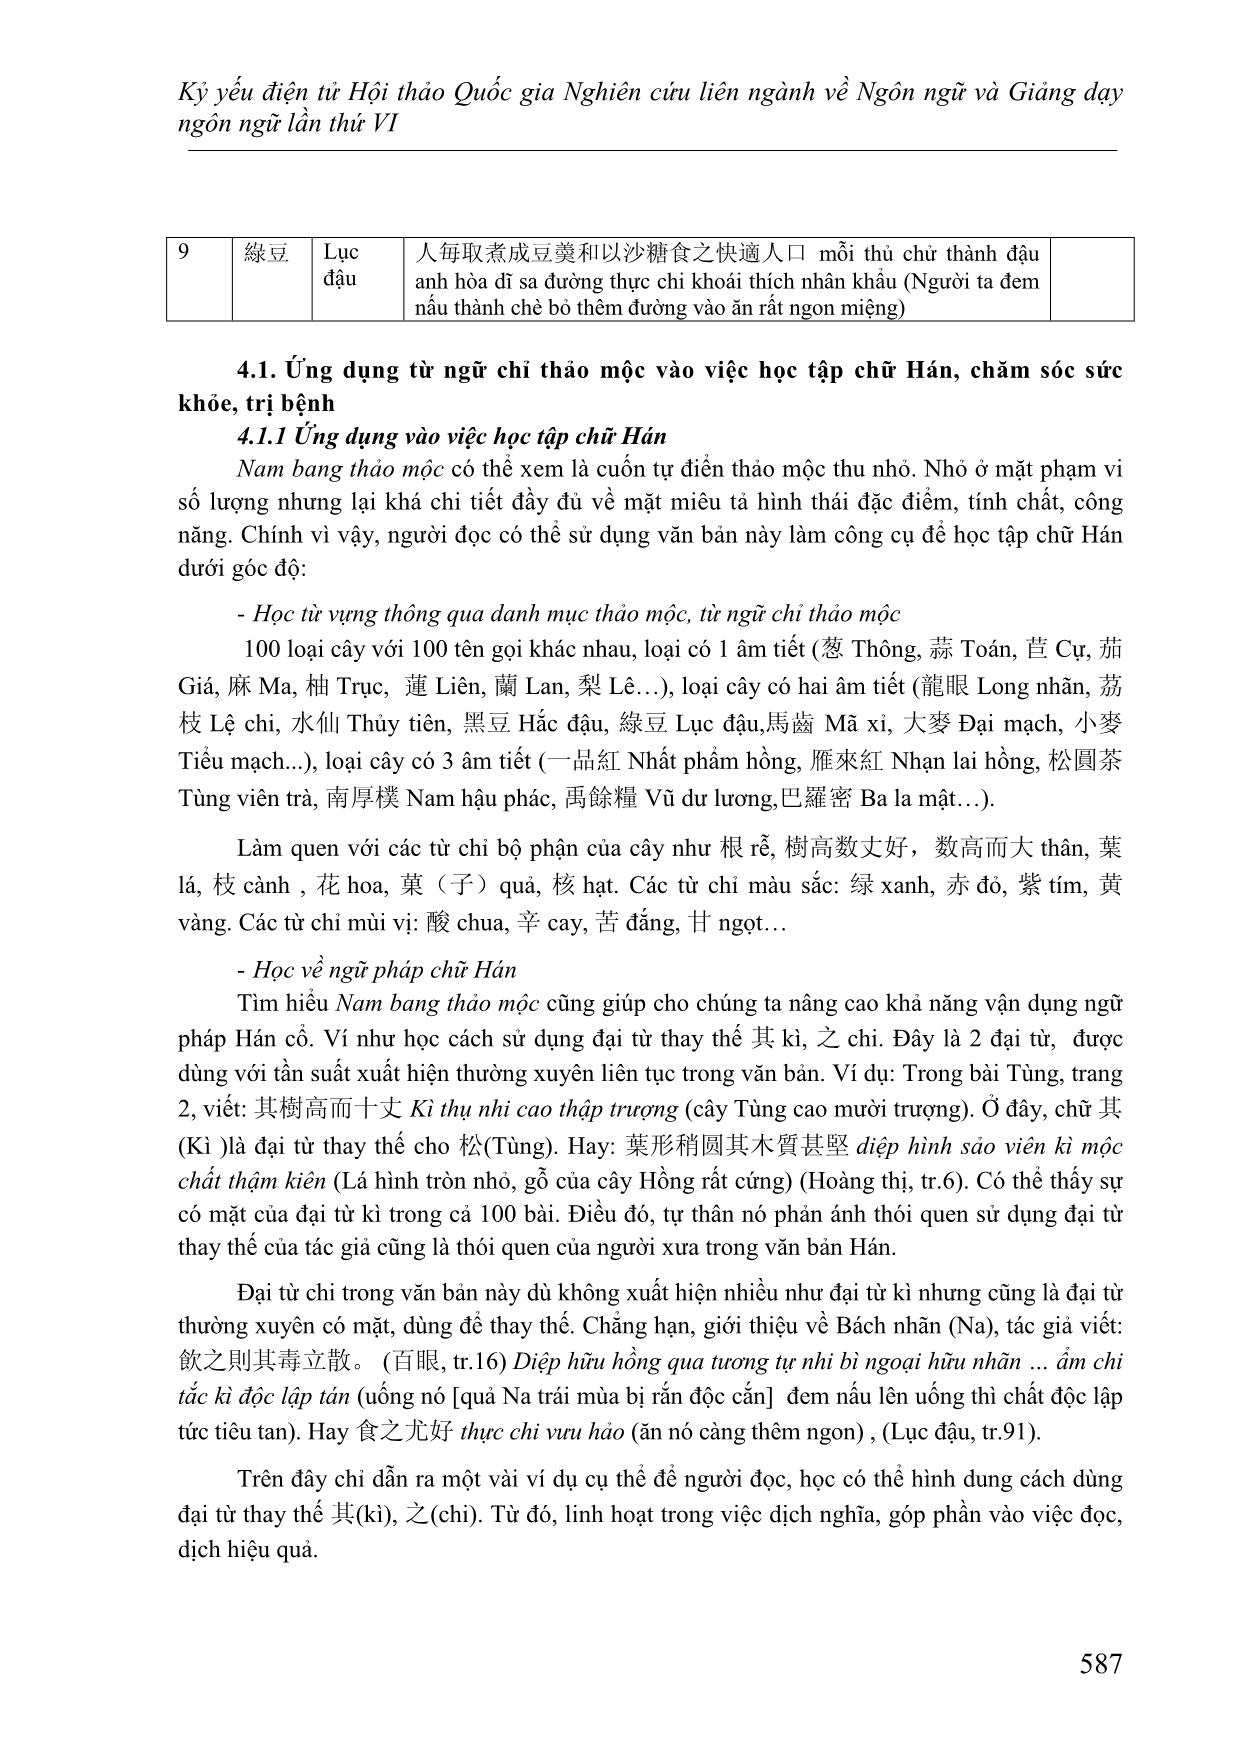 Từ ngữ chỉ thảo mộc và tính ứng dụng trong 南邦草木 Nam bang thảo mộc của Trần Trọng Bính trang 7